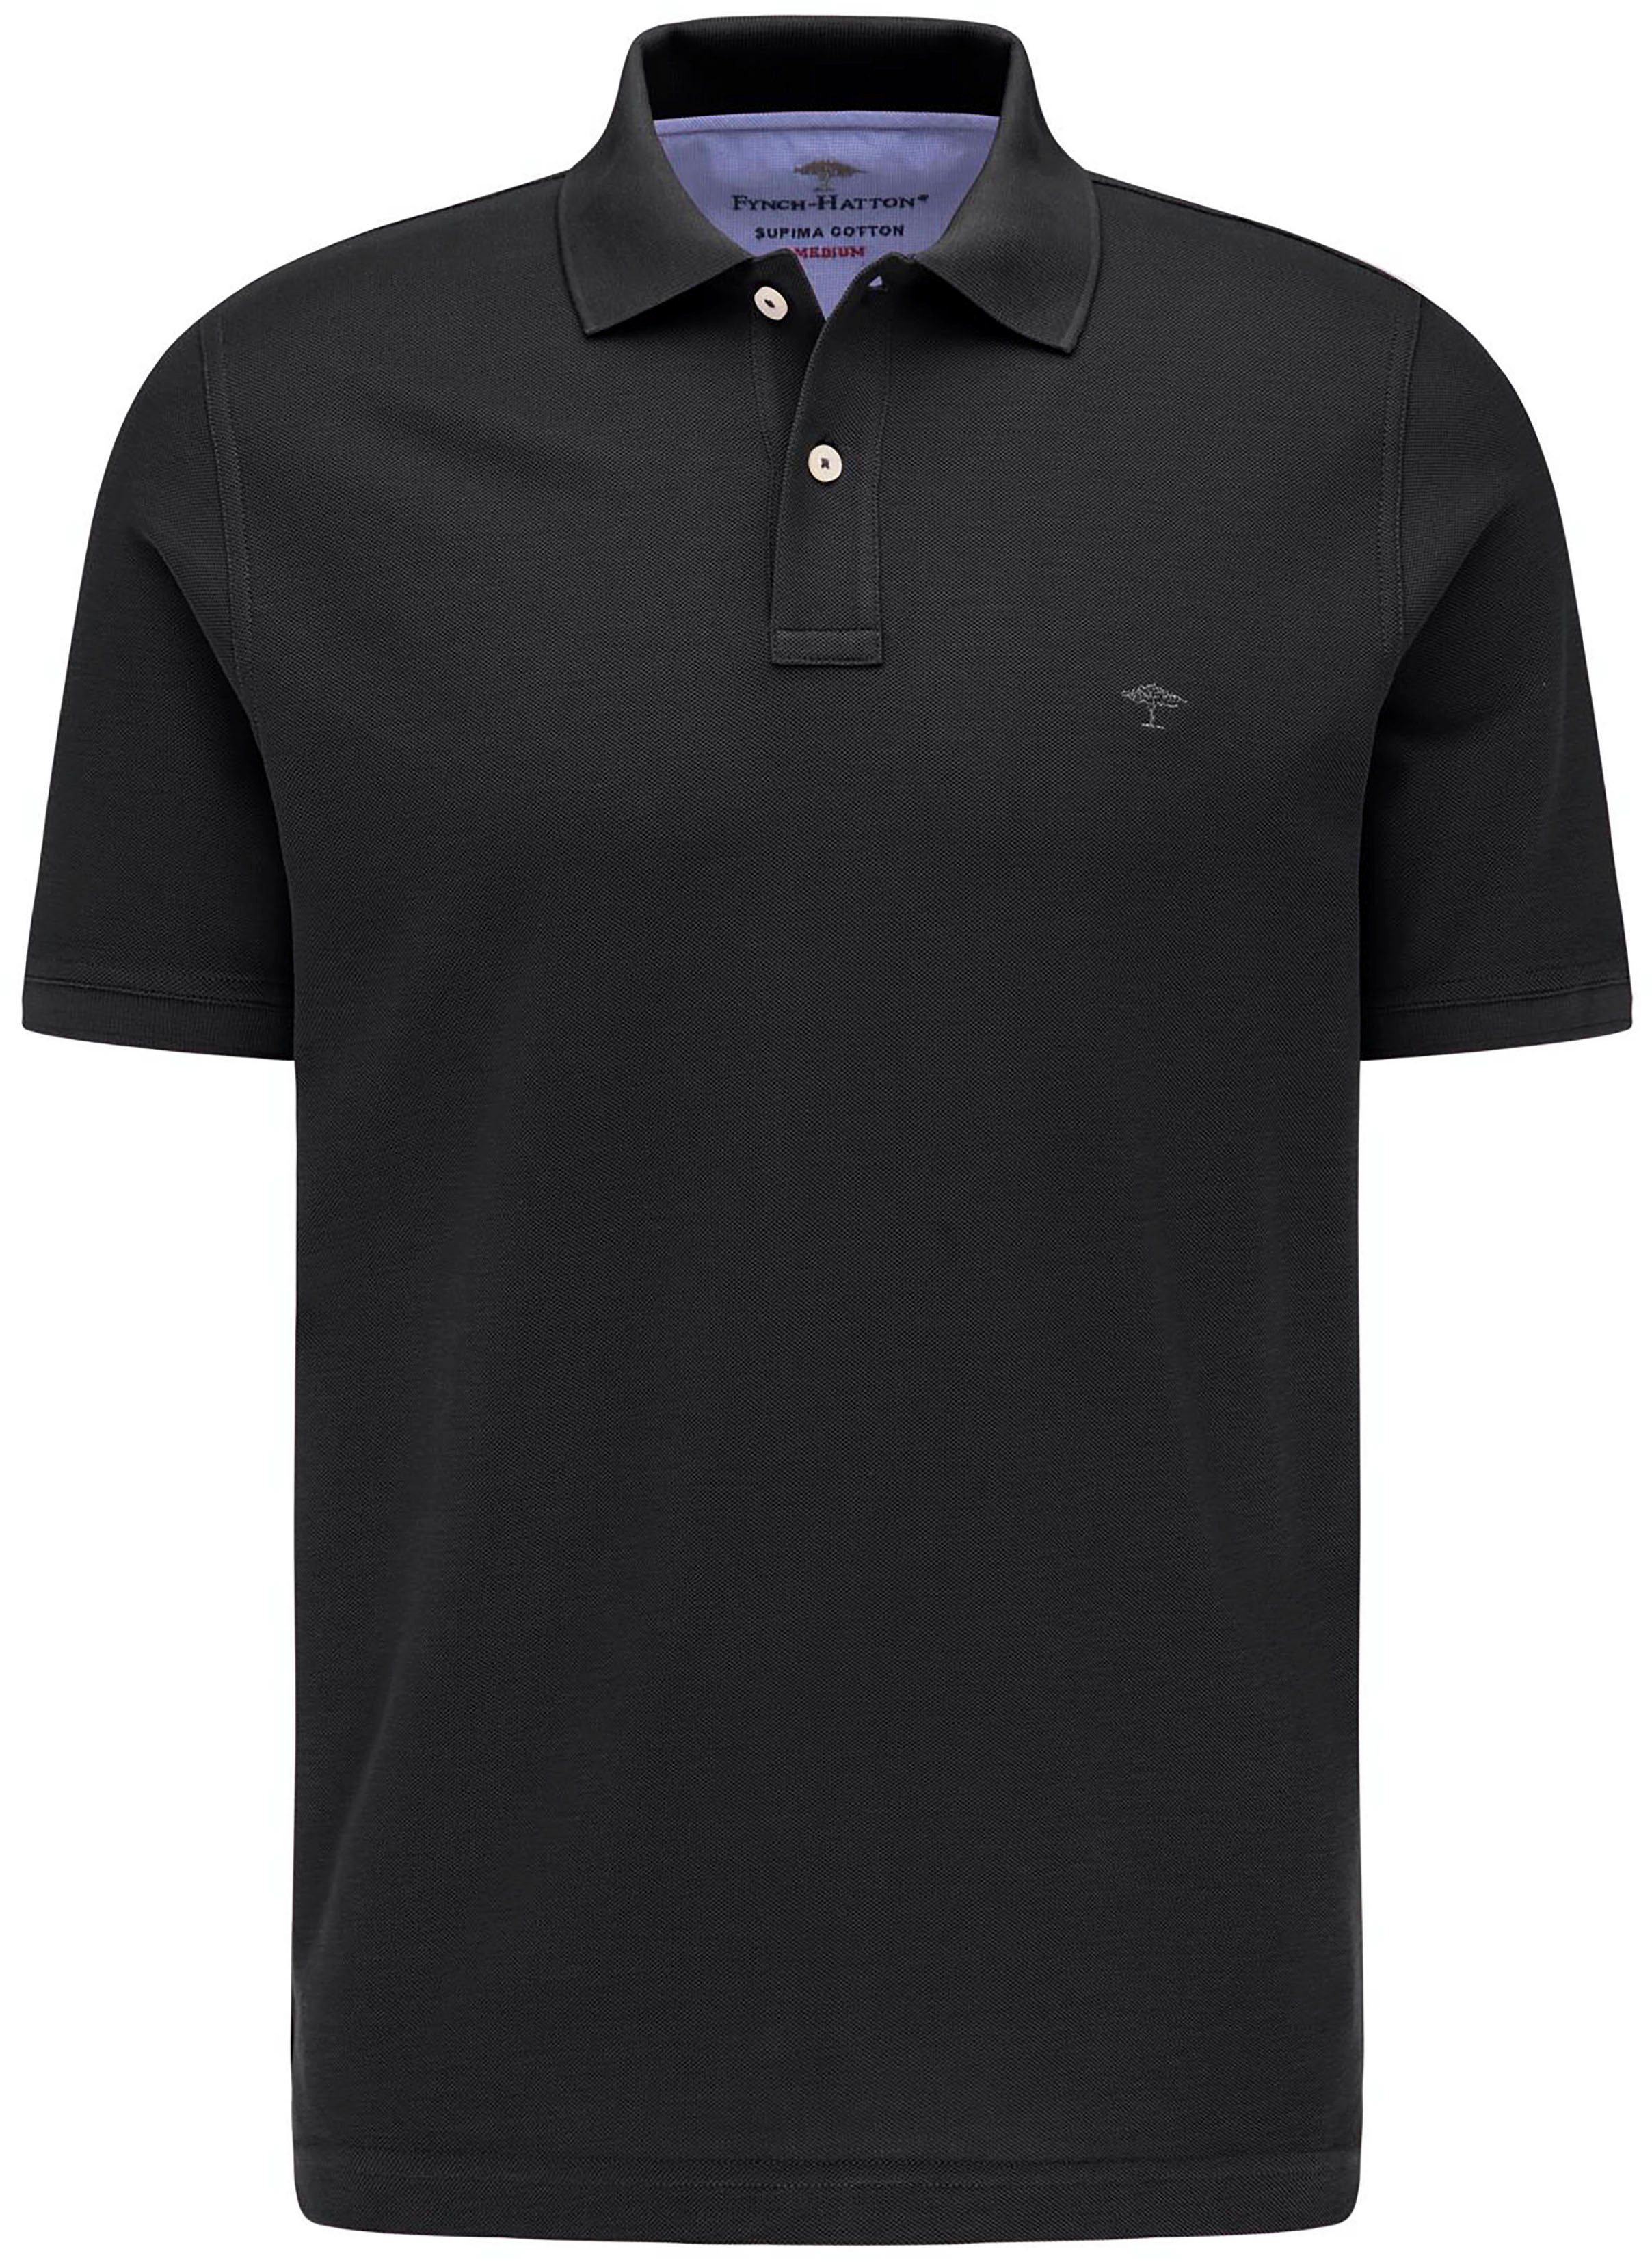 Poloshirt Kurzarm schwarz Poloshirt (1-tlg) mit FYNCH-HATTON kleinem FYNCH-HATTON Markenlogo